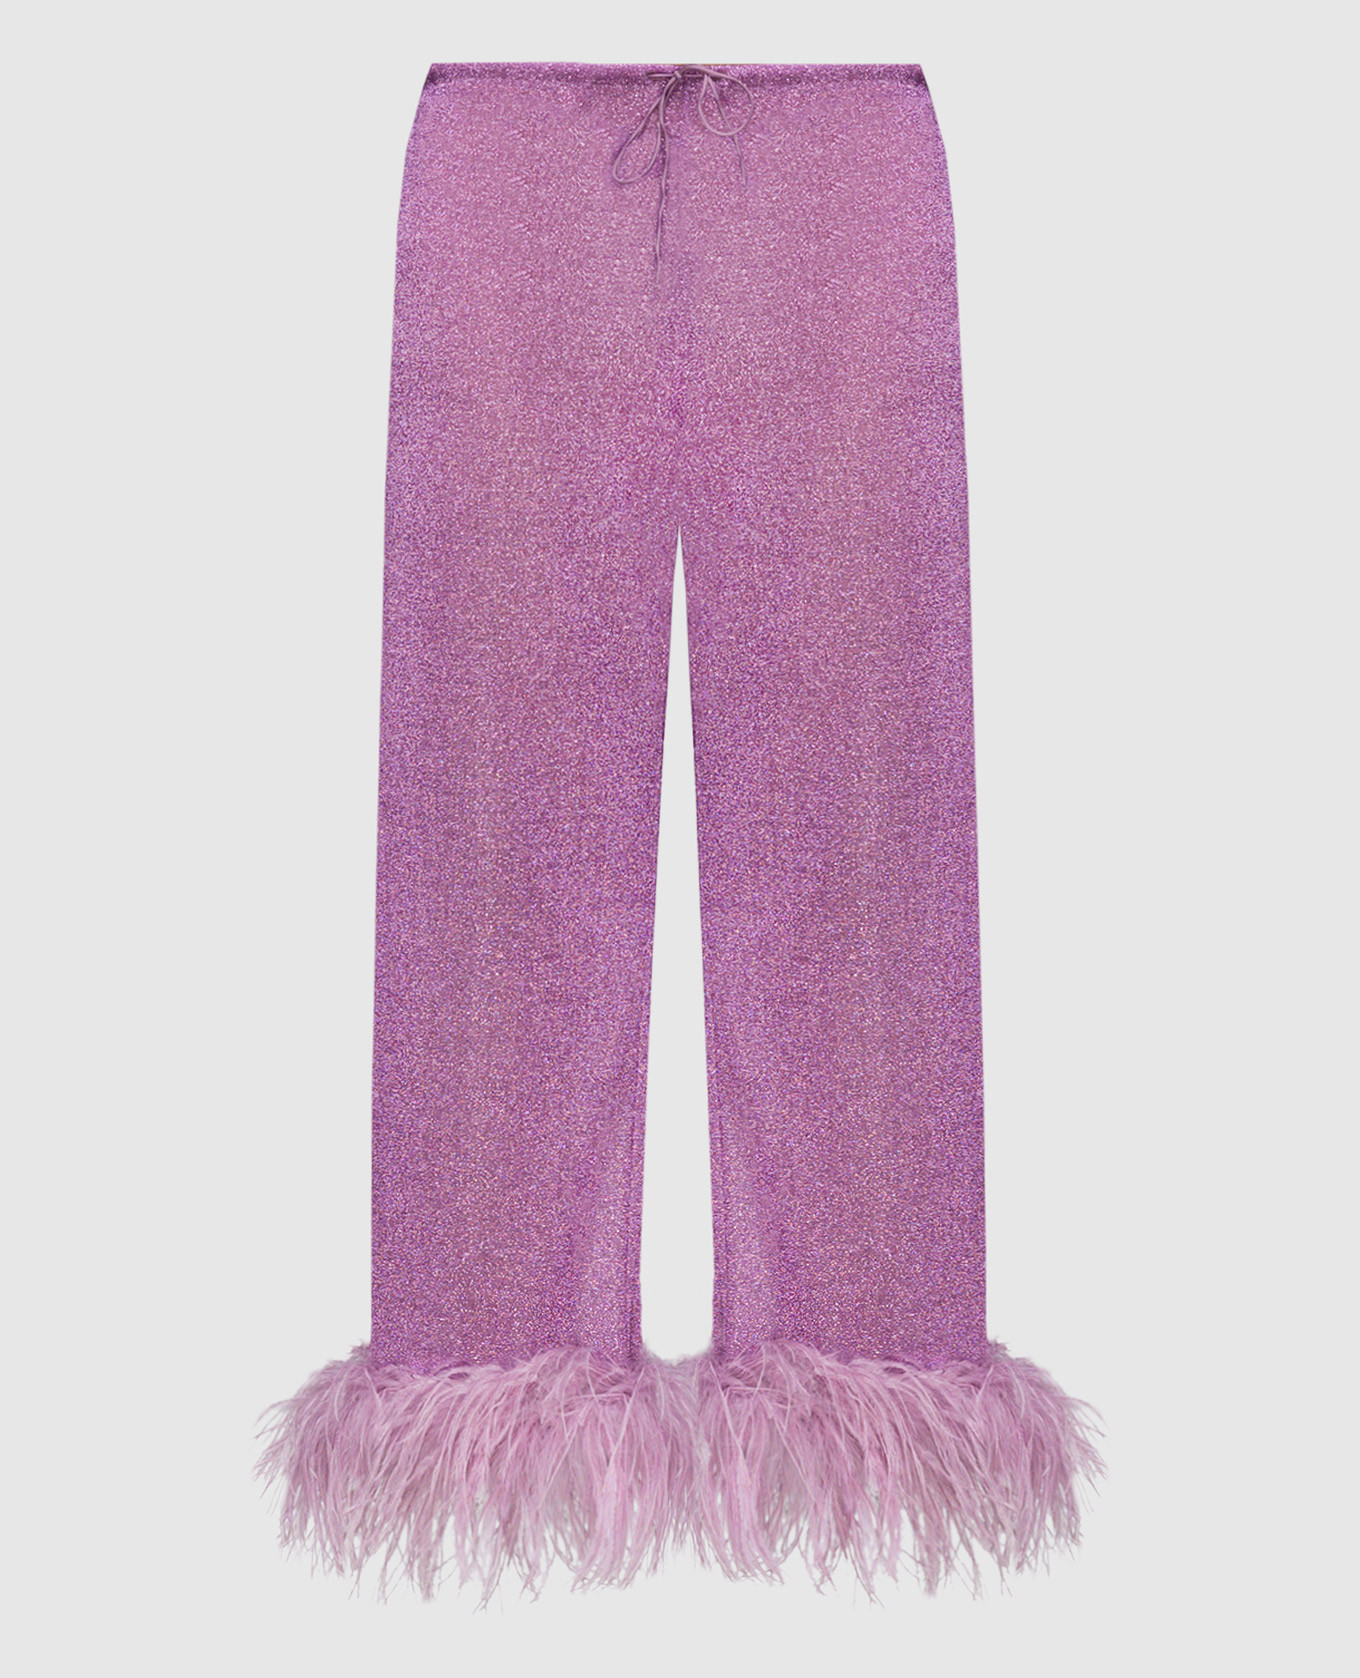 Фиолетовые брюки Lumiеre plumage со страусиными перьями